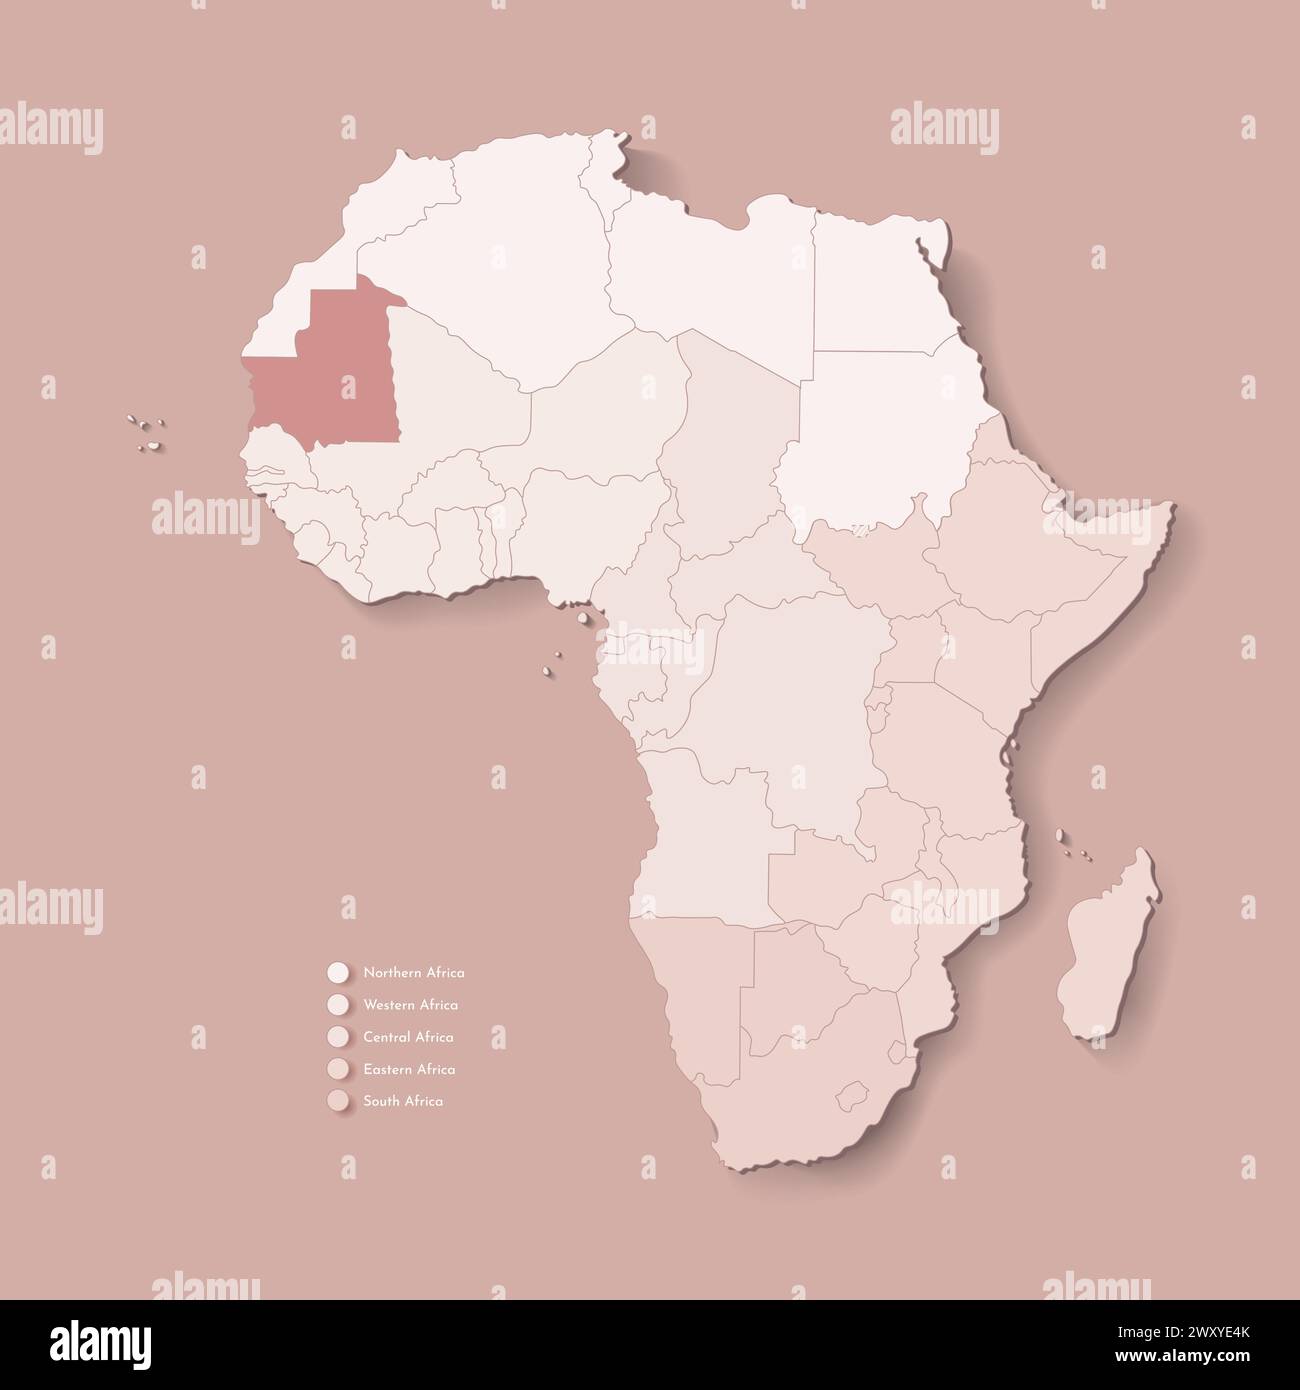 Illustrazione vettoriale con continente africano con confini di tutti gli stati e paese marcato Mauritania. Mappa politica di colore marrone con occidentale, sud Illustrazione Vettoriale